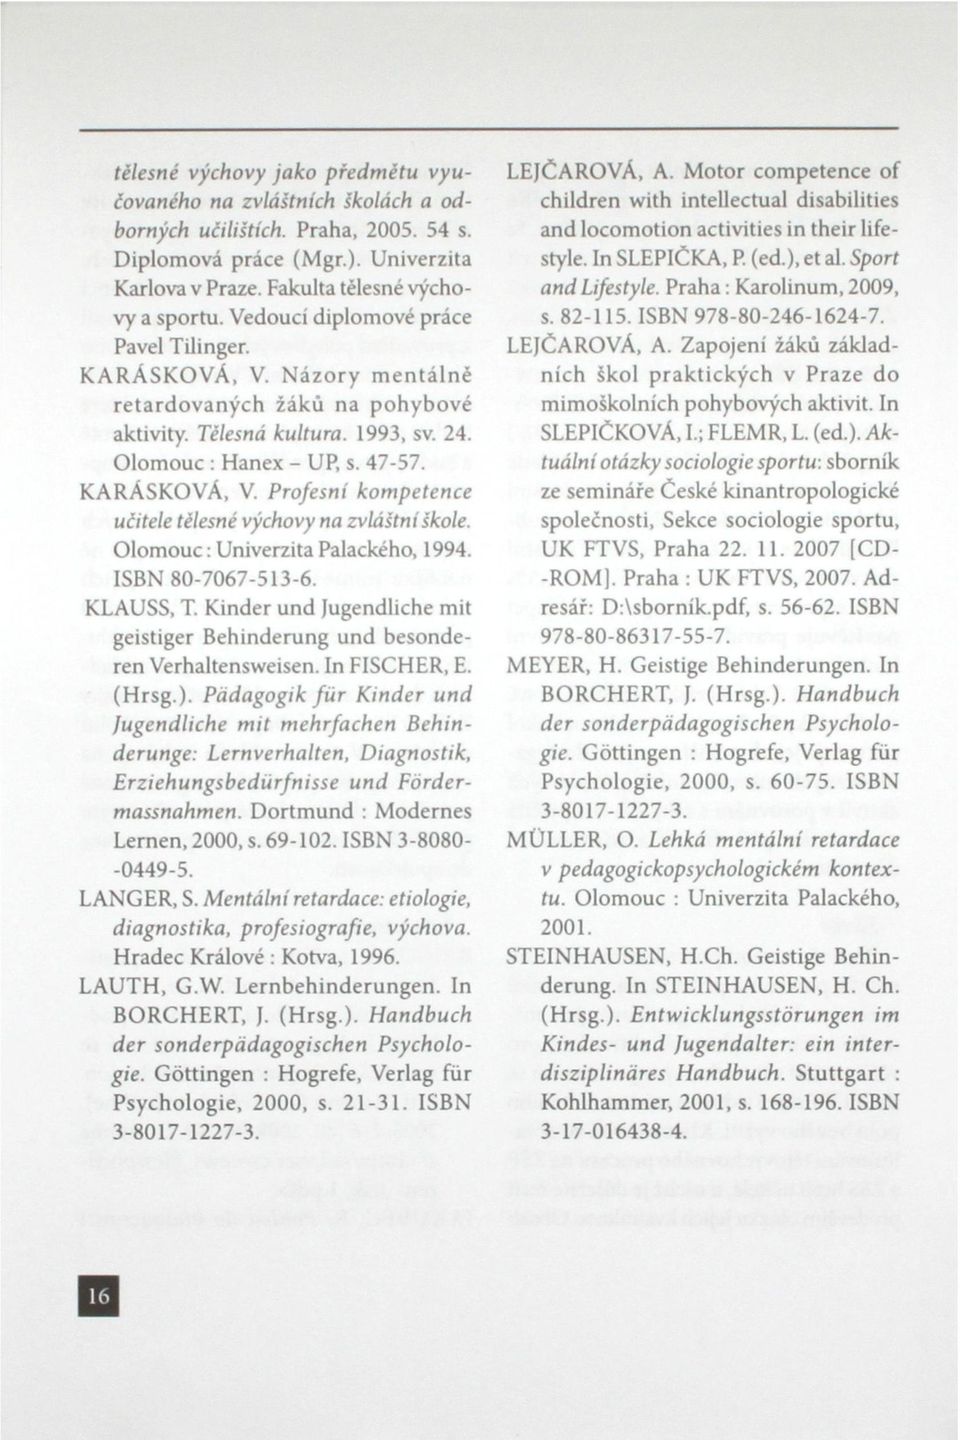 Olomouc: Univerzita Palackého, 1994. ISBN 80-7067-513-6. KLAUSS, T. Kinder und Jugendliche mít geistiger Behinderung und besonderen Verhaltensweisen. In FISCHER, E. (Hrsg.).